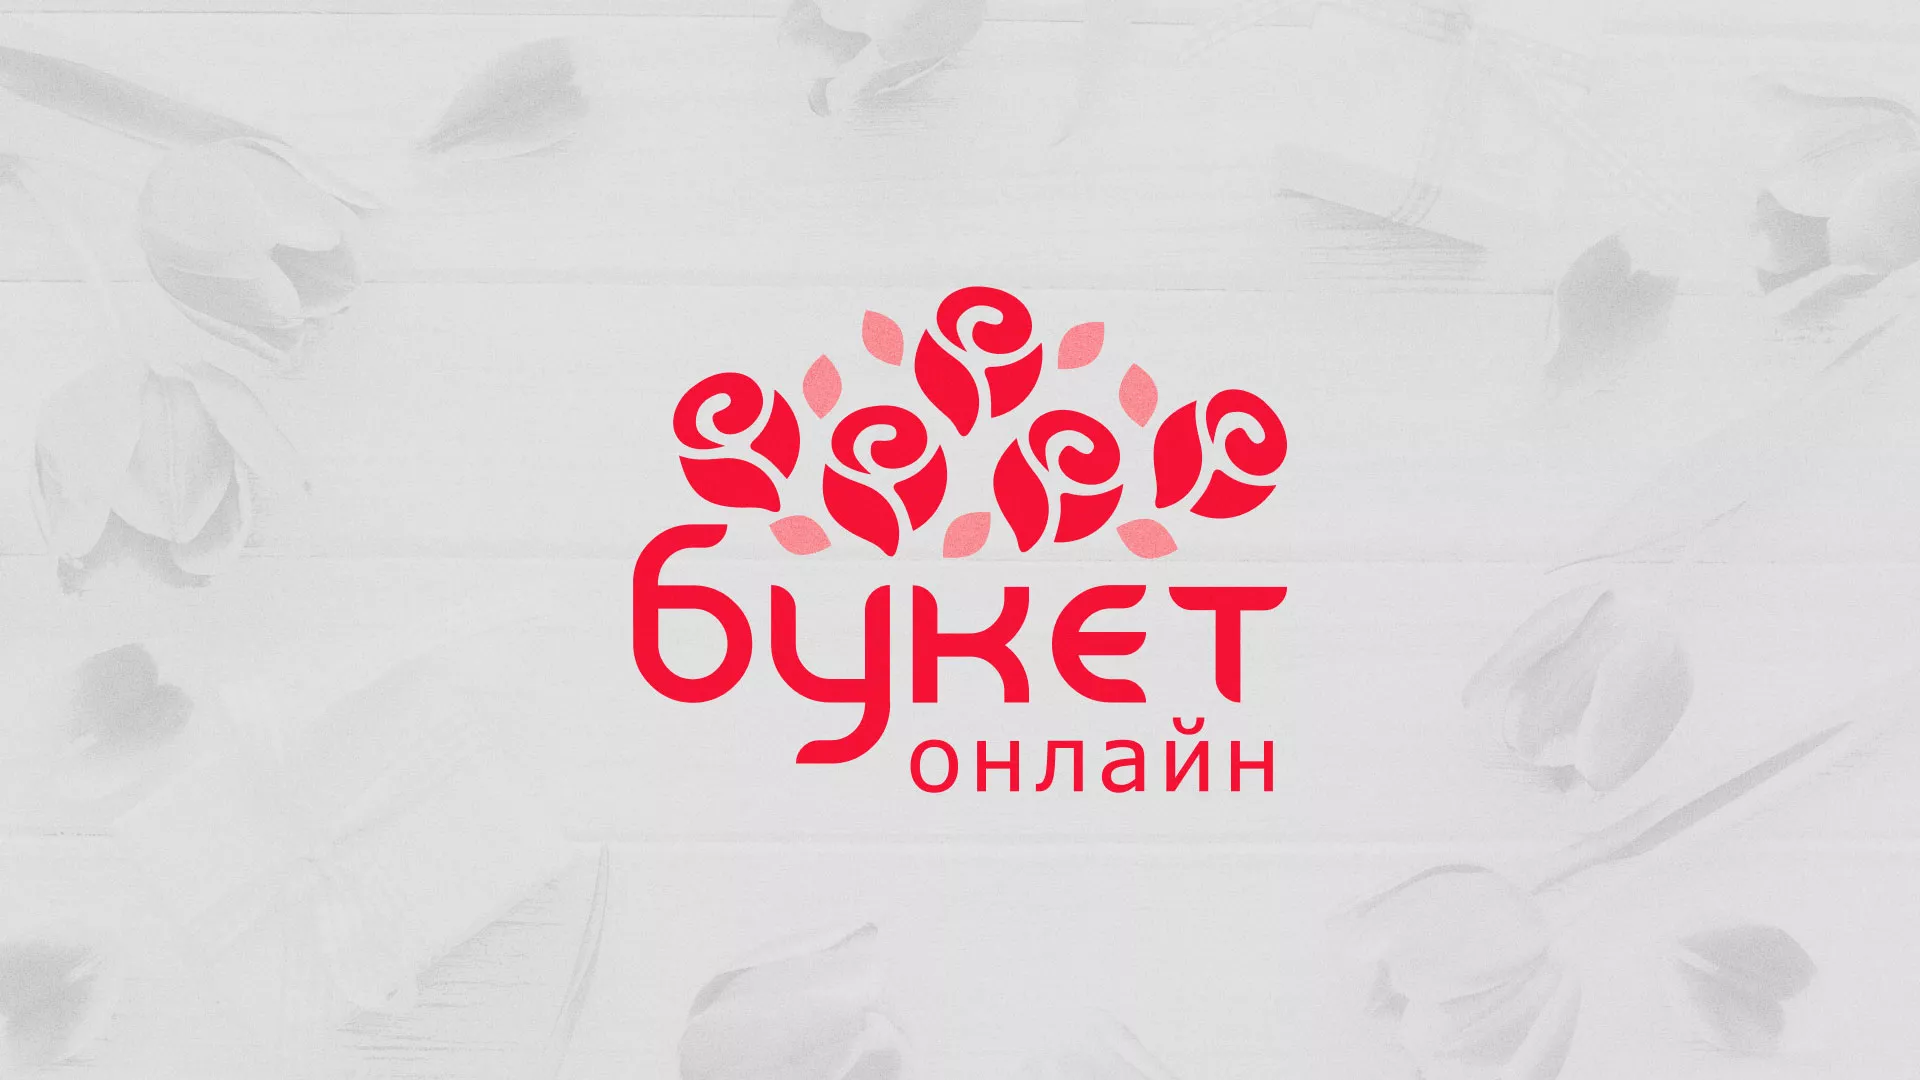 Создание интернет-магазина «Букет-онлайн» по цветам в Боровске